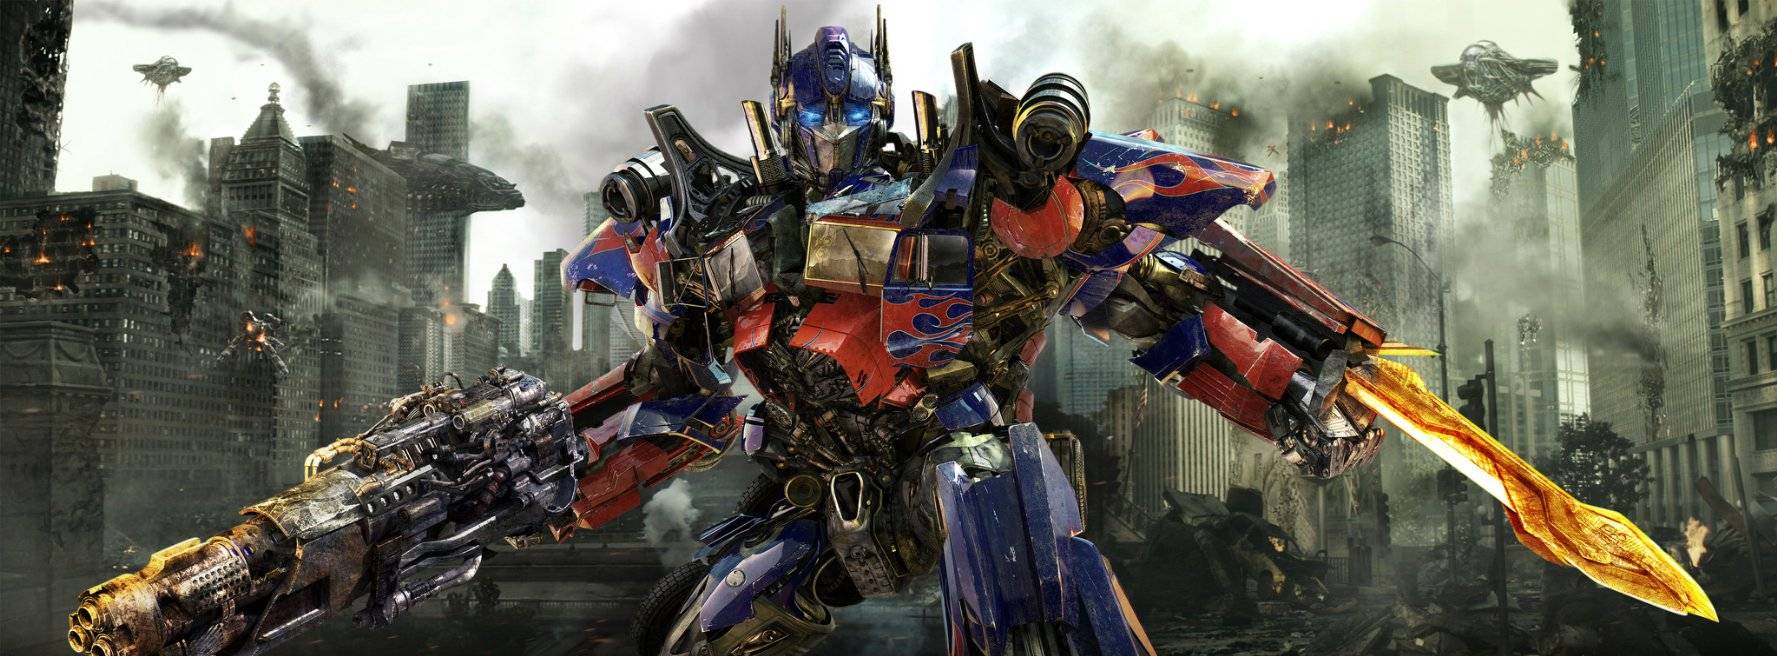 Xem Phim Robot Đại Chiến 3: Bóng Tối Mặt Trăng, Transformers: Dark of the Moon 2011